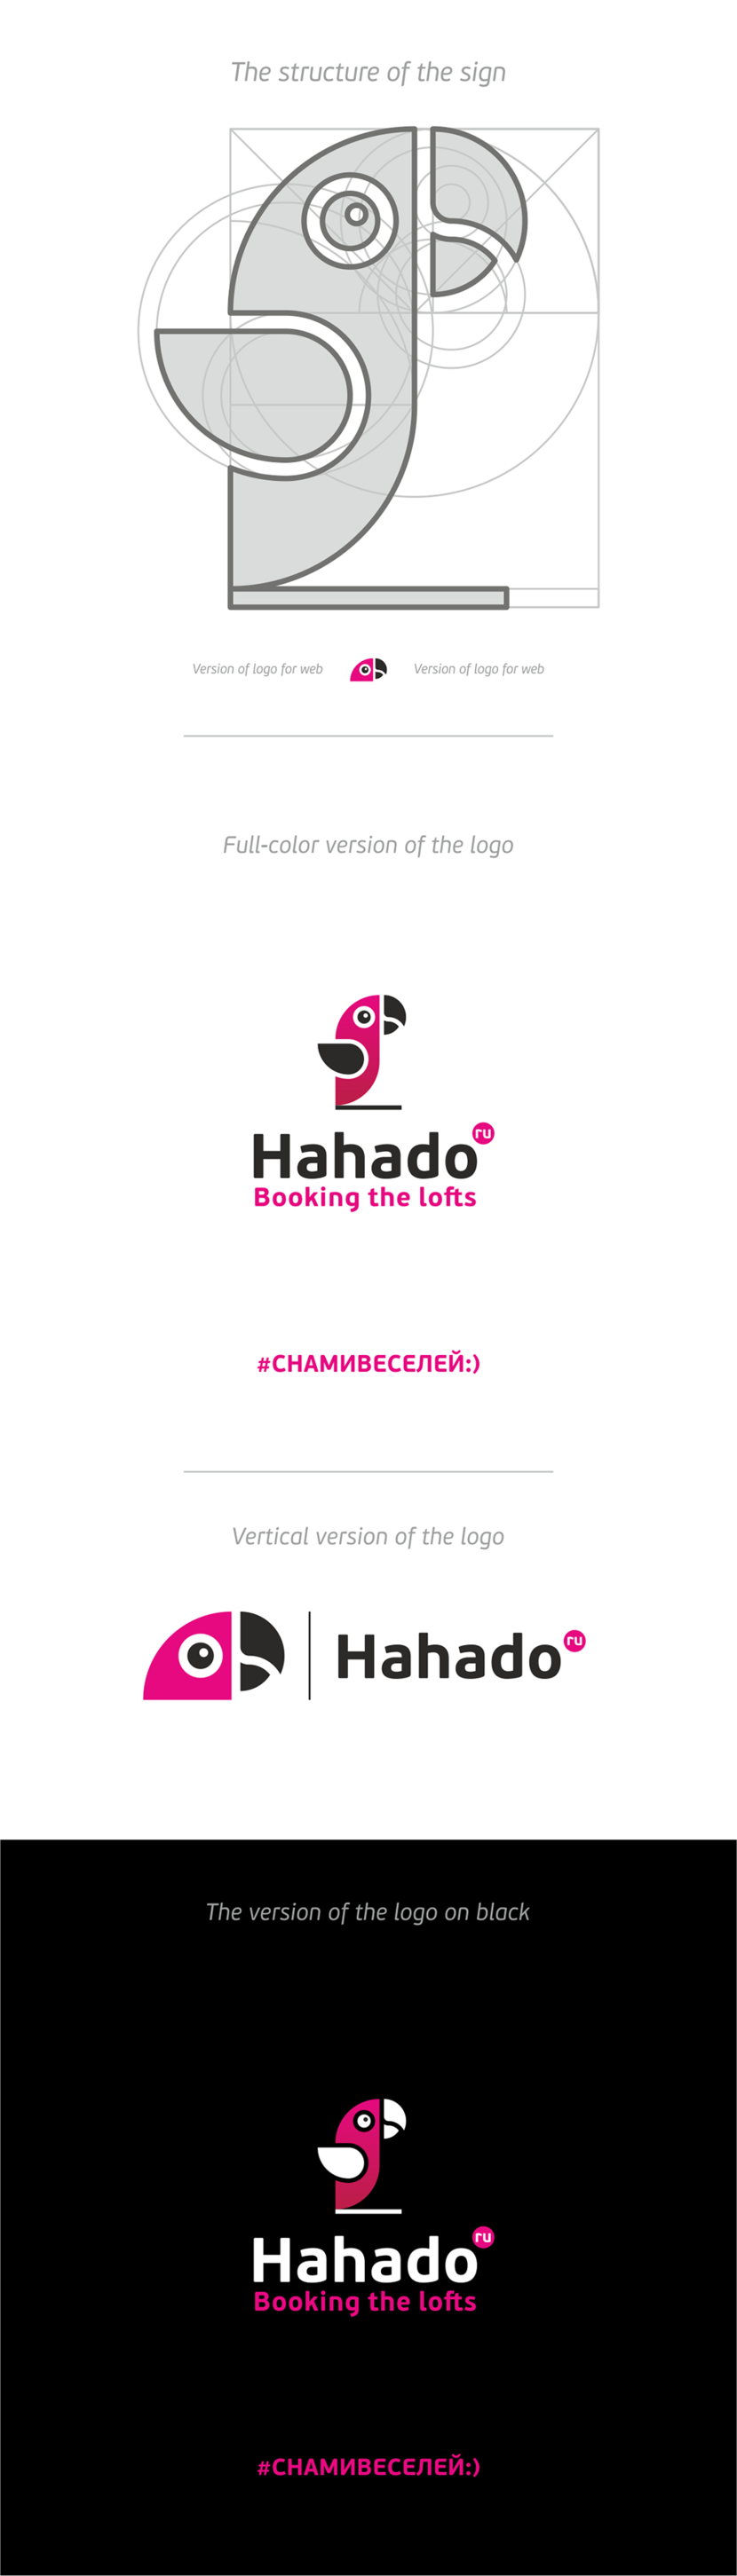 + - Лого для компании hahado.ru  (Хахаду) - сервис бронирования лофтов